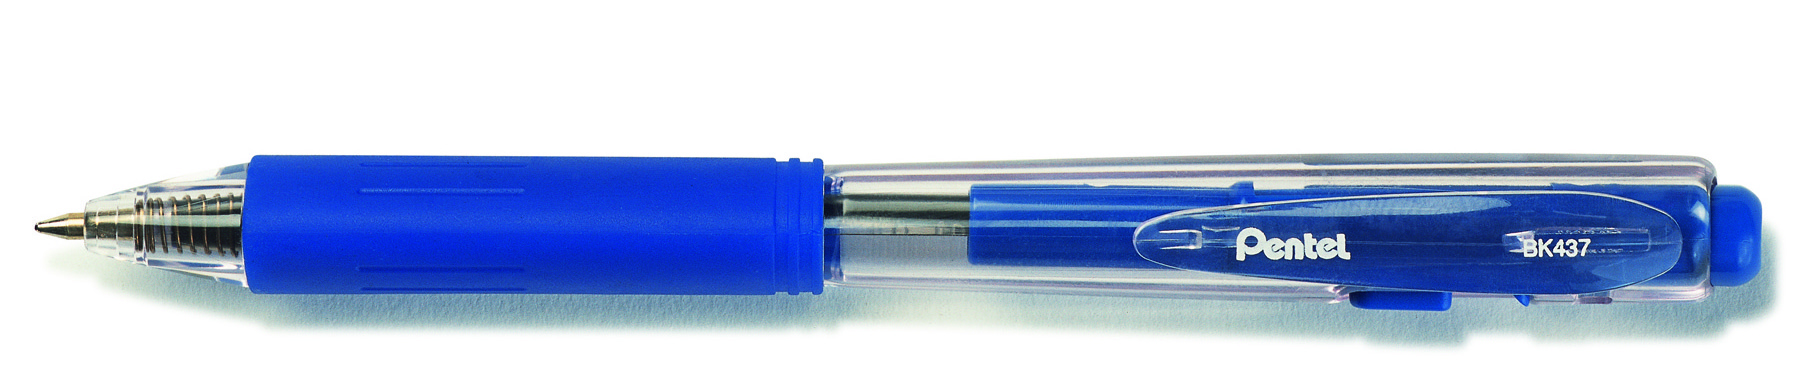 Стержень для ручки BK437